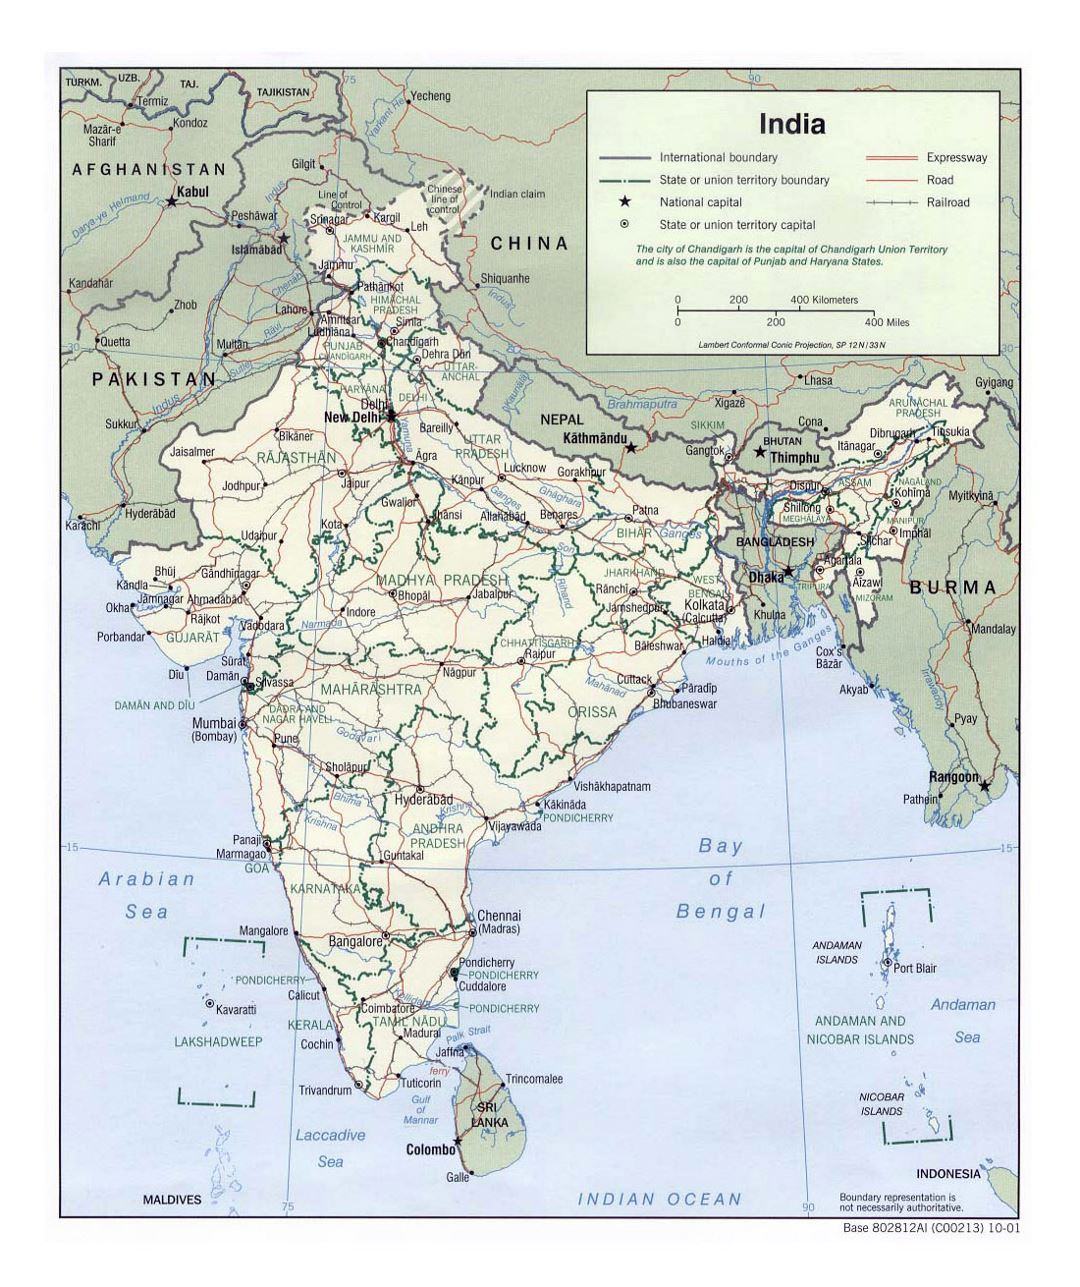 Grande mapa político y administrativo de la India con carreteras, ferrocarriles y grandes ciudades - 2001